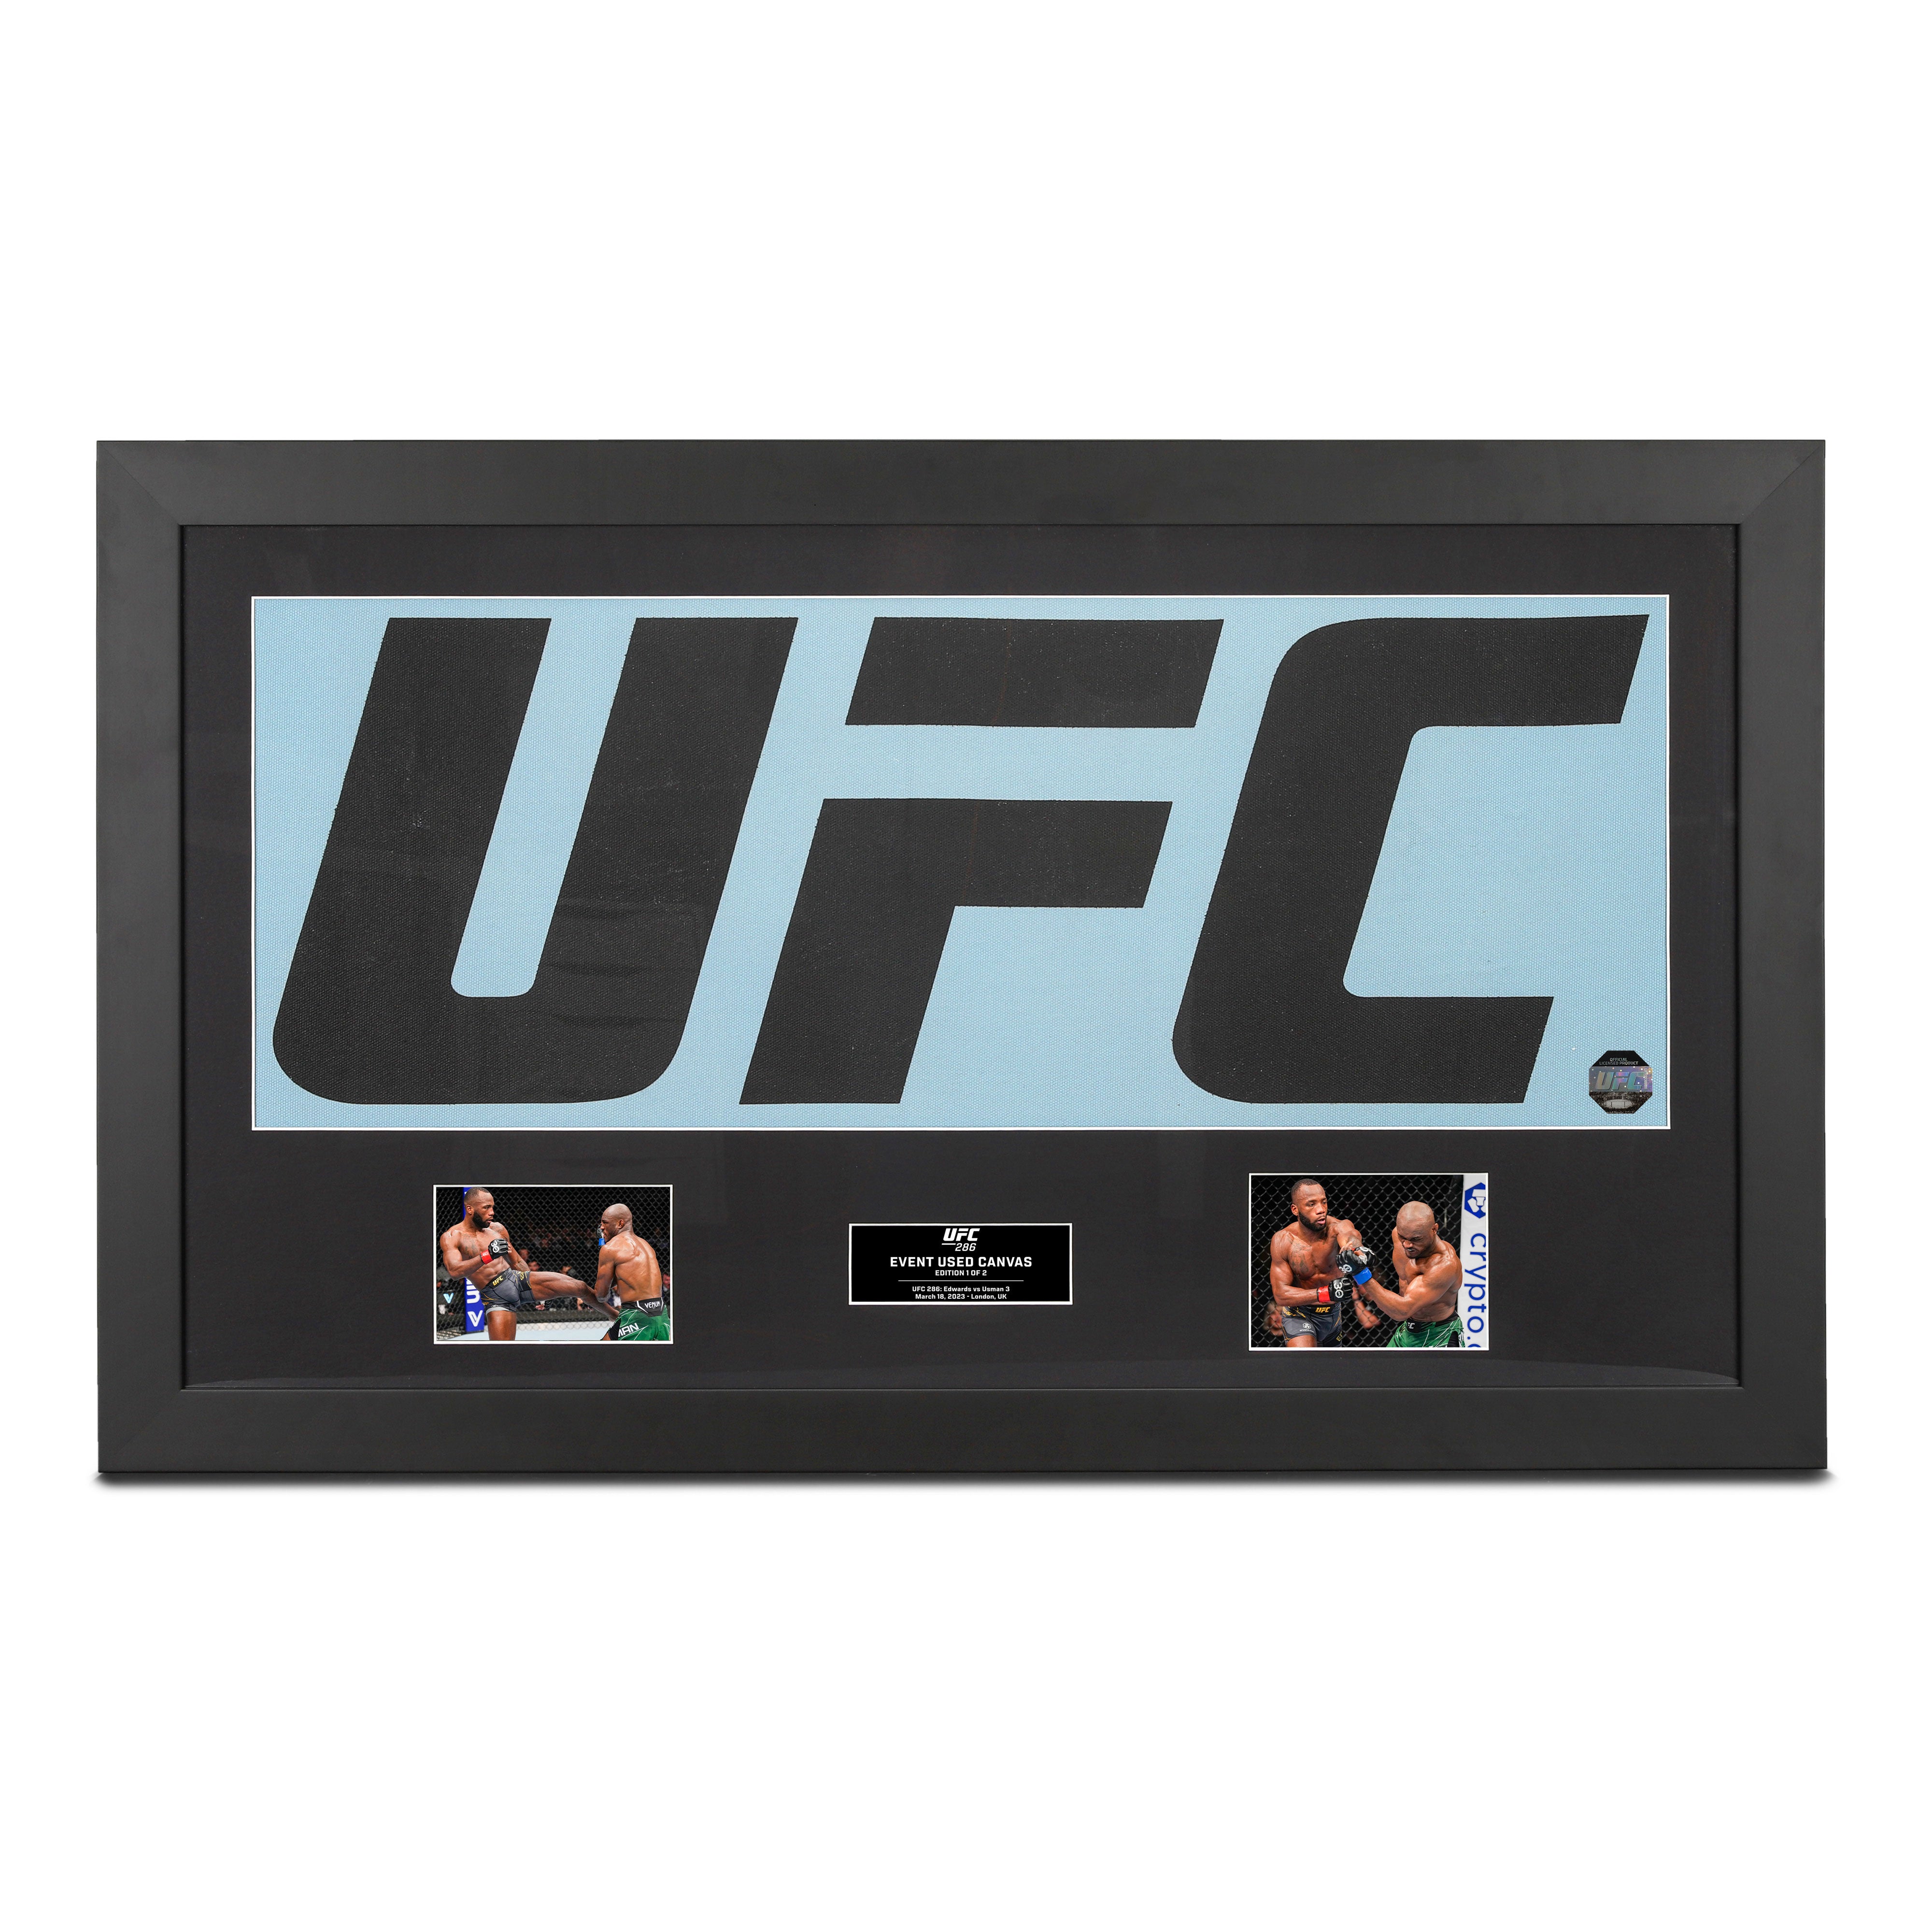 Get Your Hands On Exclusive UFC 286 Merchandise! - UFC Store